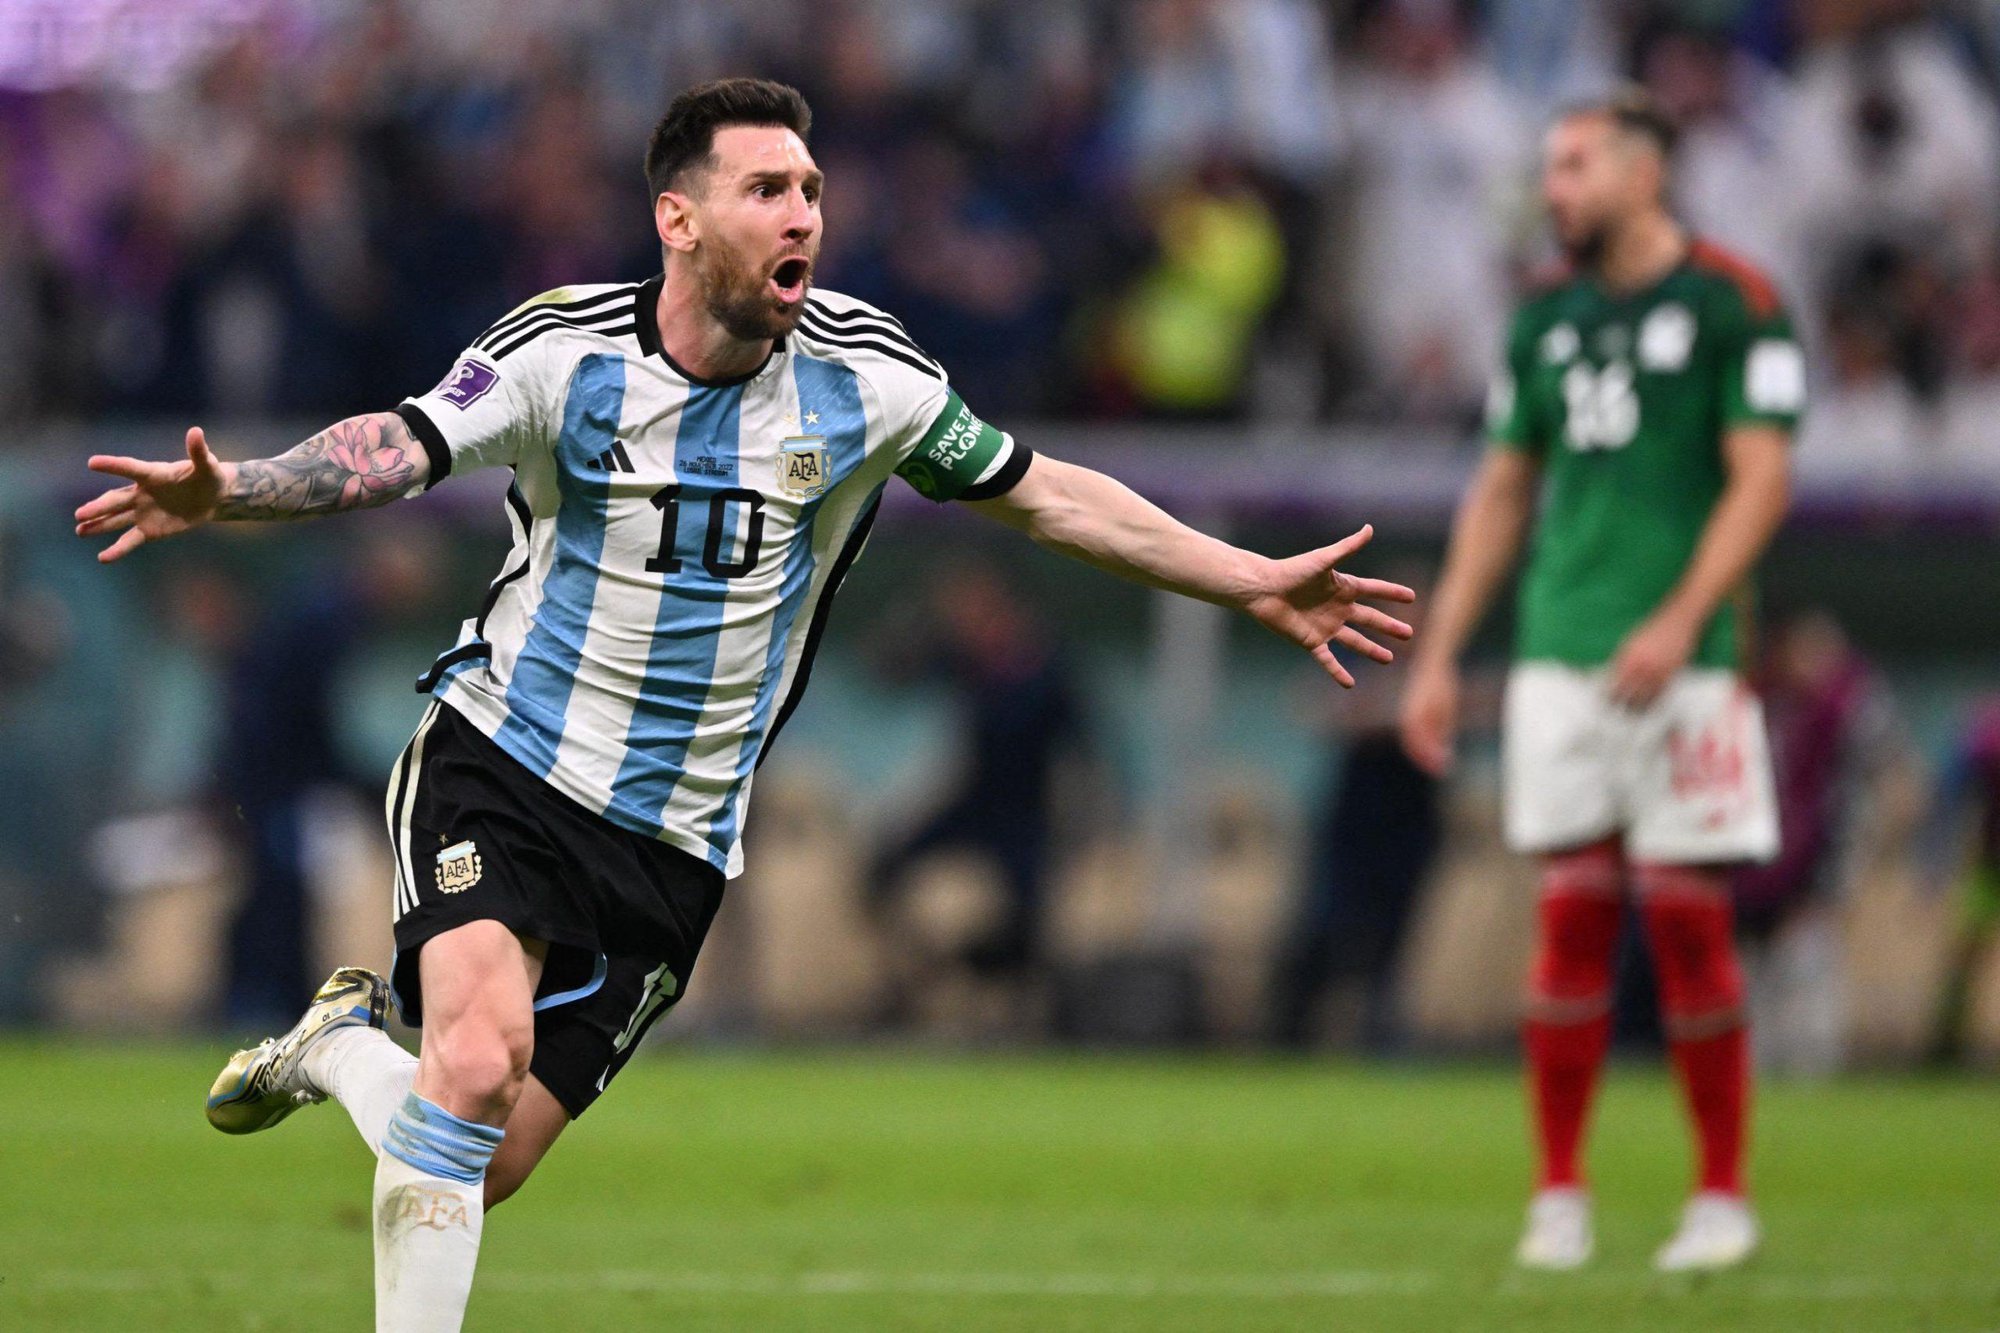 Trung vệ Bùi Tiến Dũng: “Messi sẽ giúp Argentina thắng cách biệt Australia” - Ảnh 1.